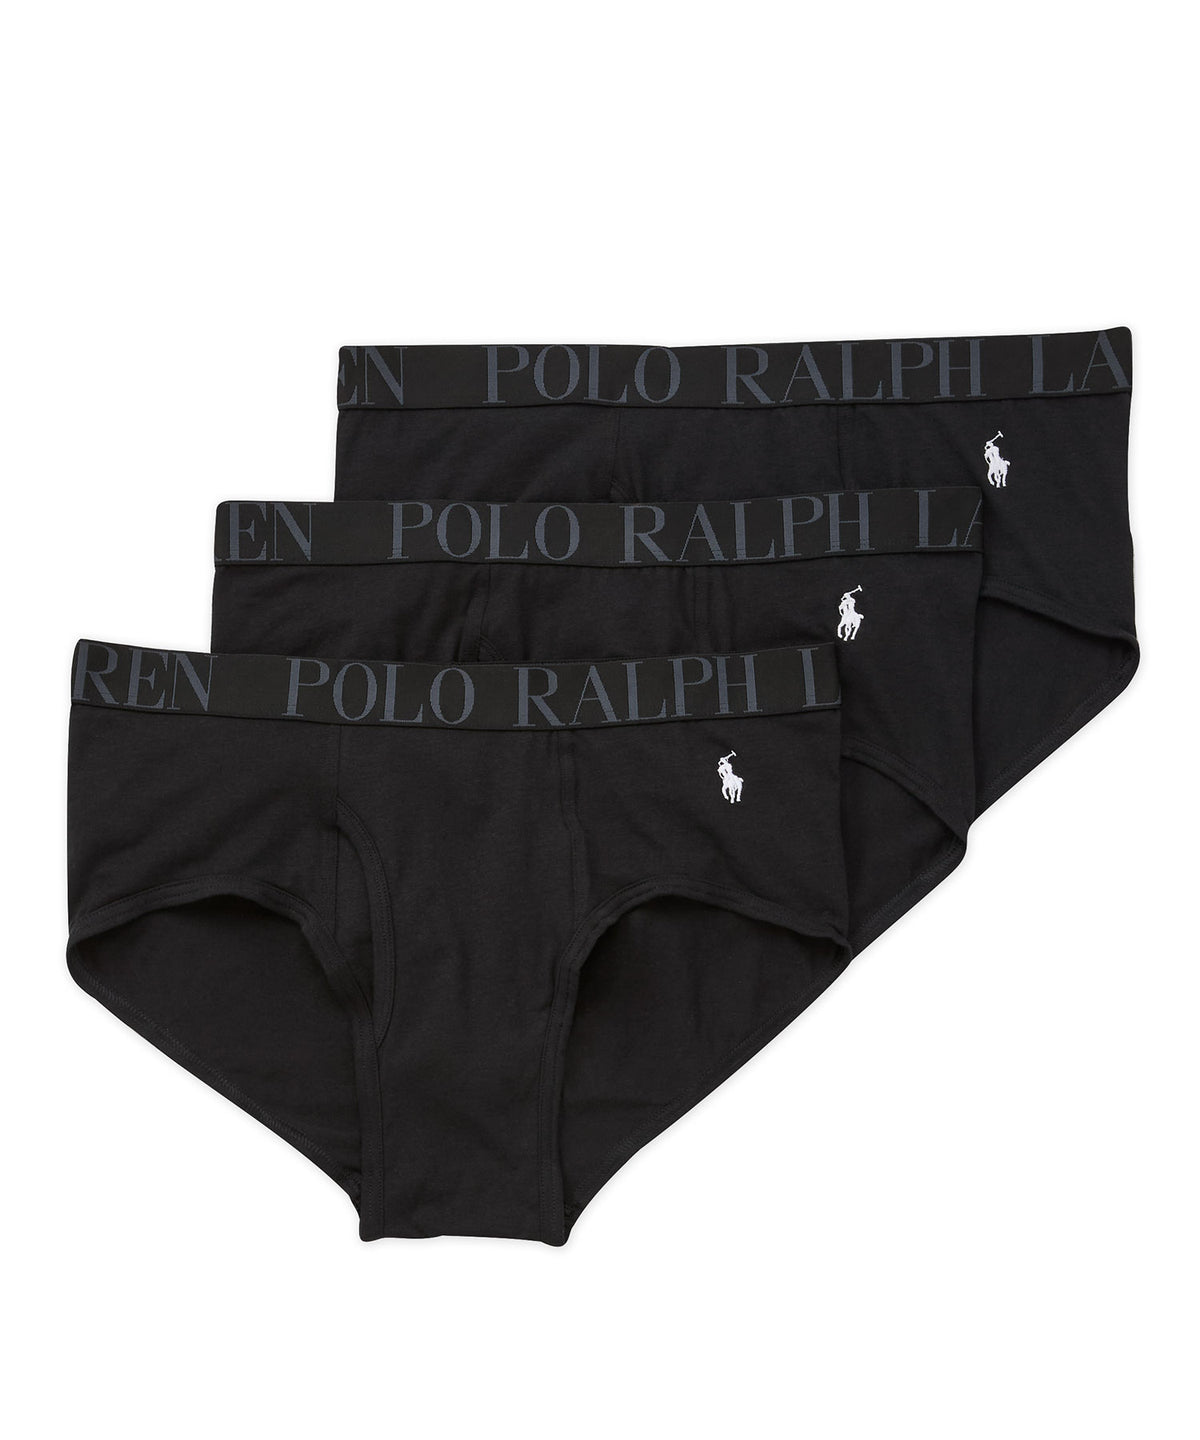 Polo Ralph Lauren Classic Briefs (3-Pack), Big & Tall